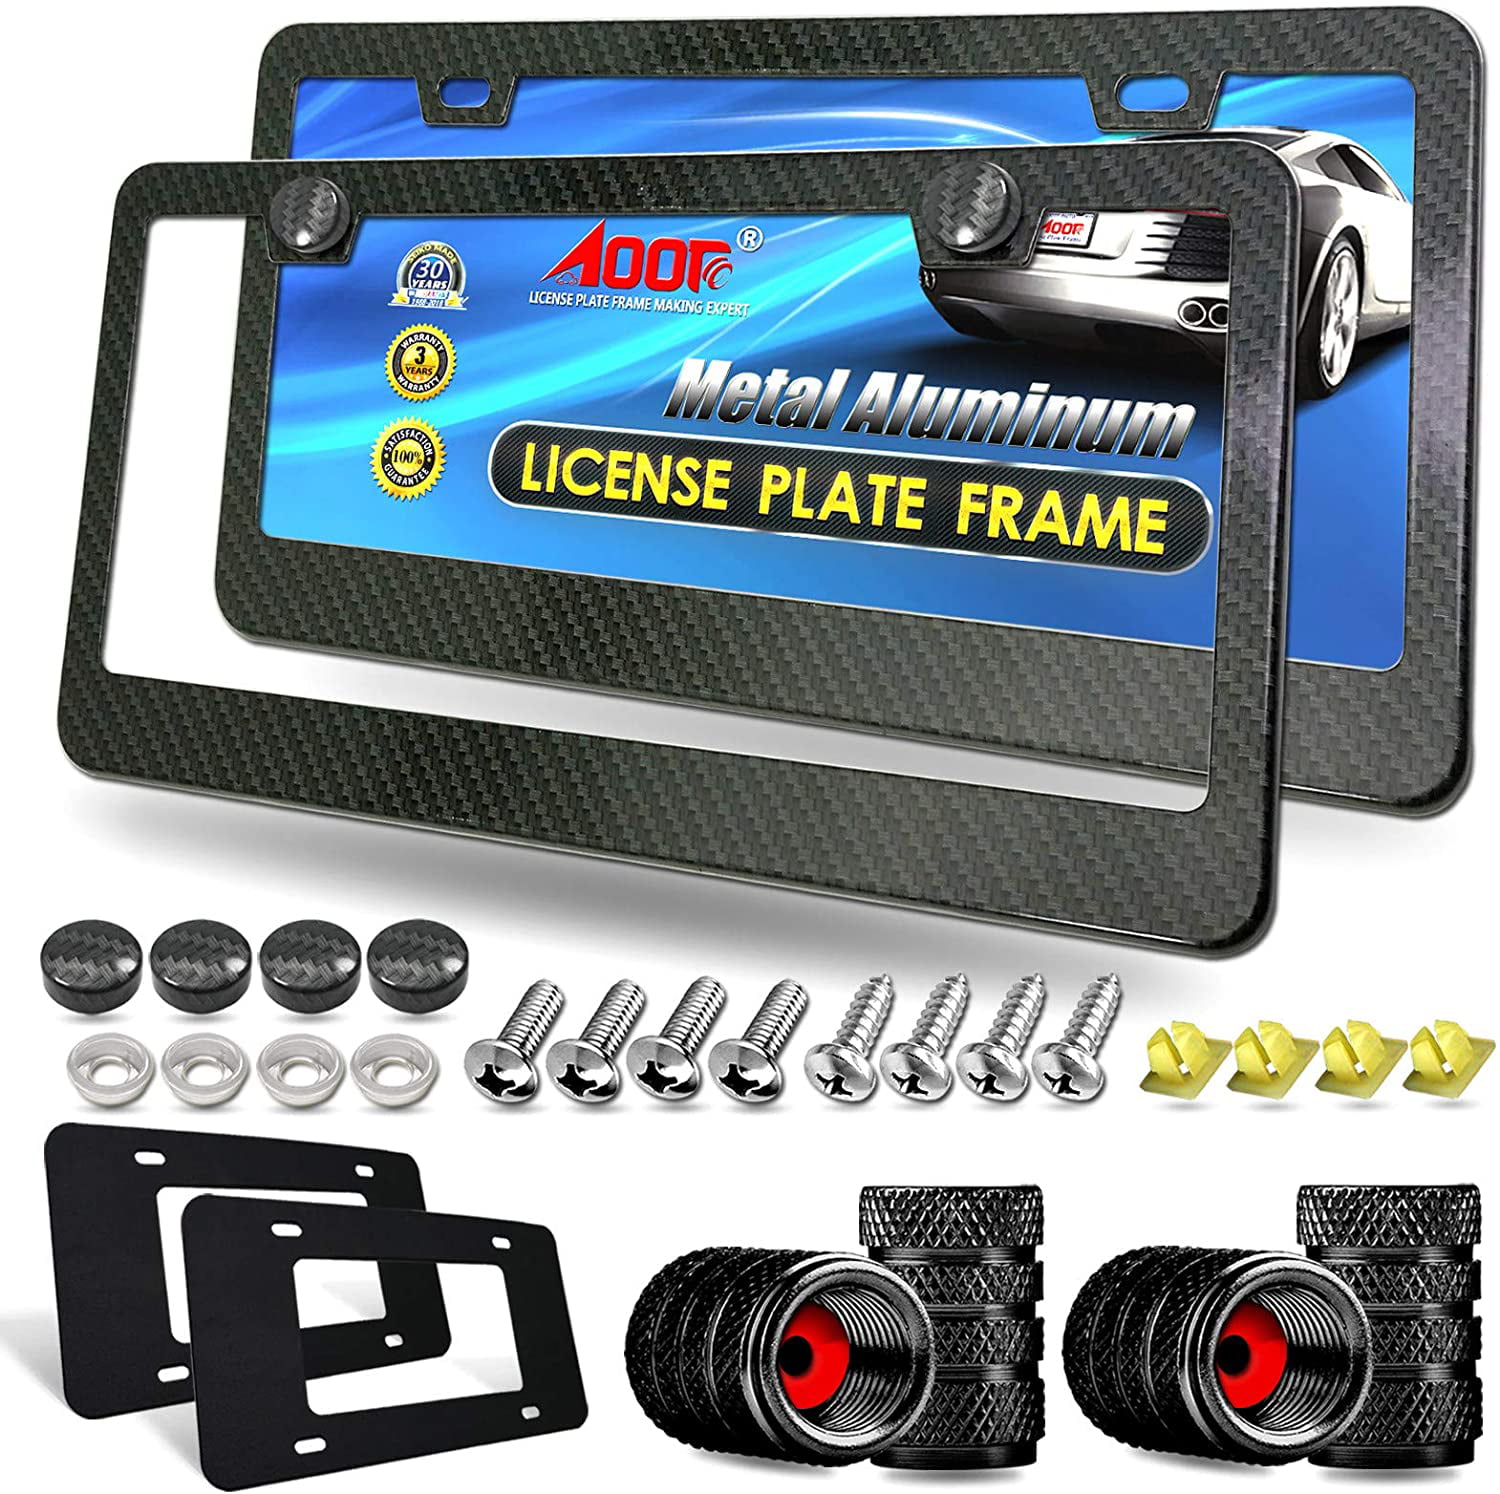 PORSCHE License Plate Frame Aluminium Black Holder Frames Covers for Car Holders Heavy Duty BLACK